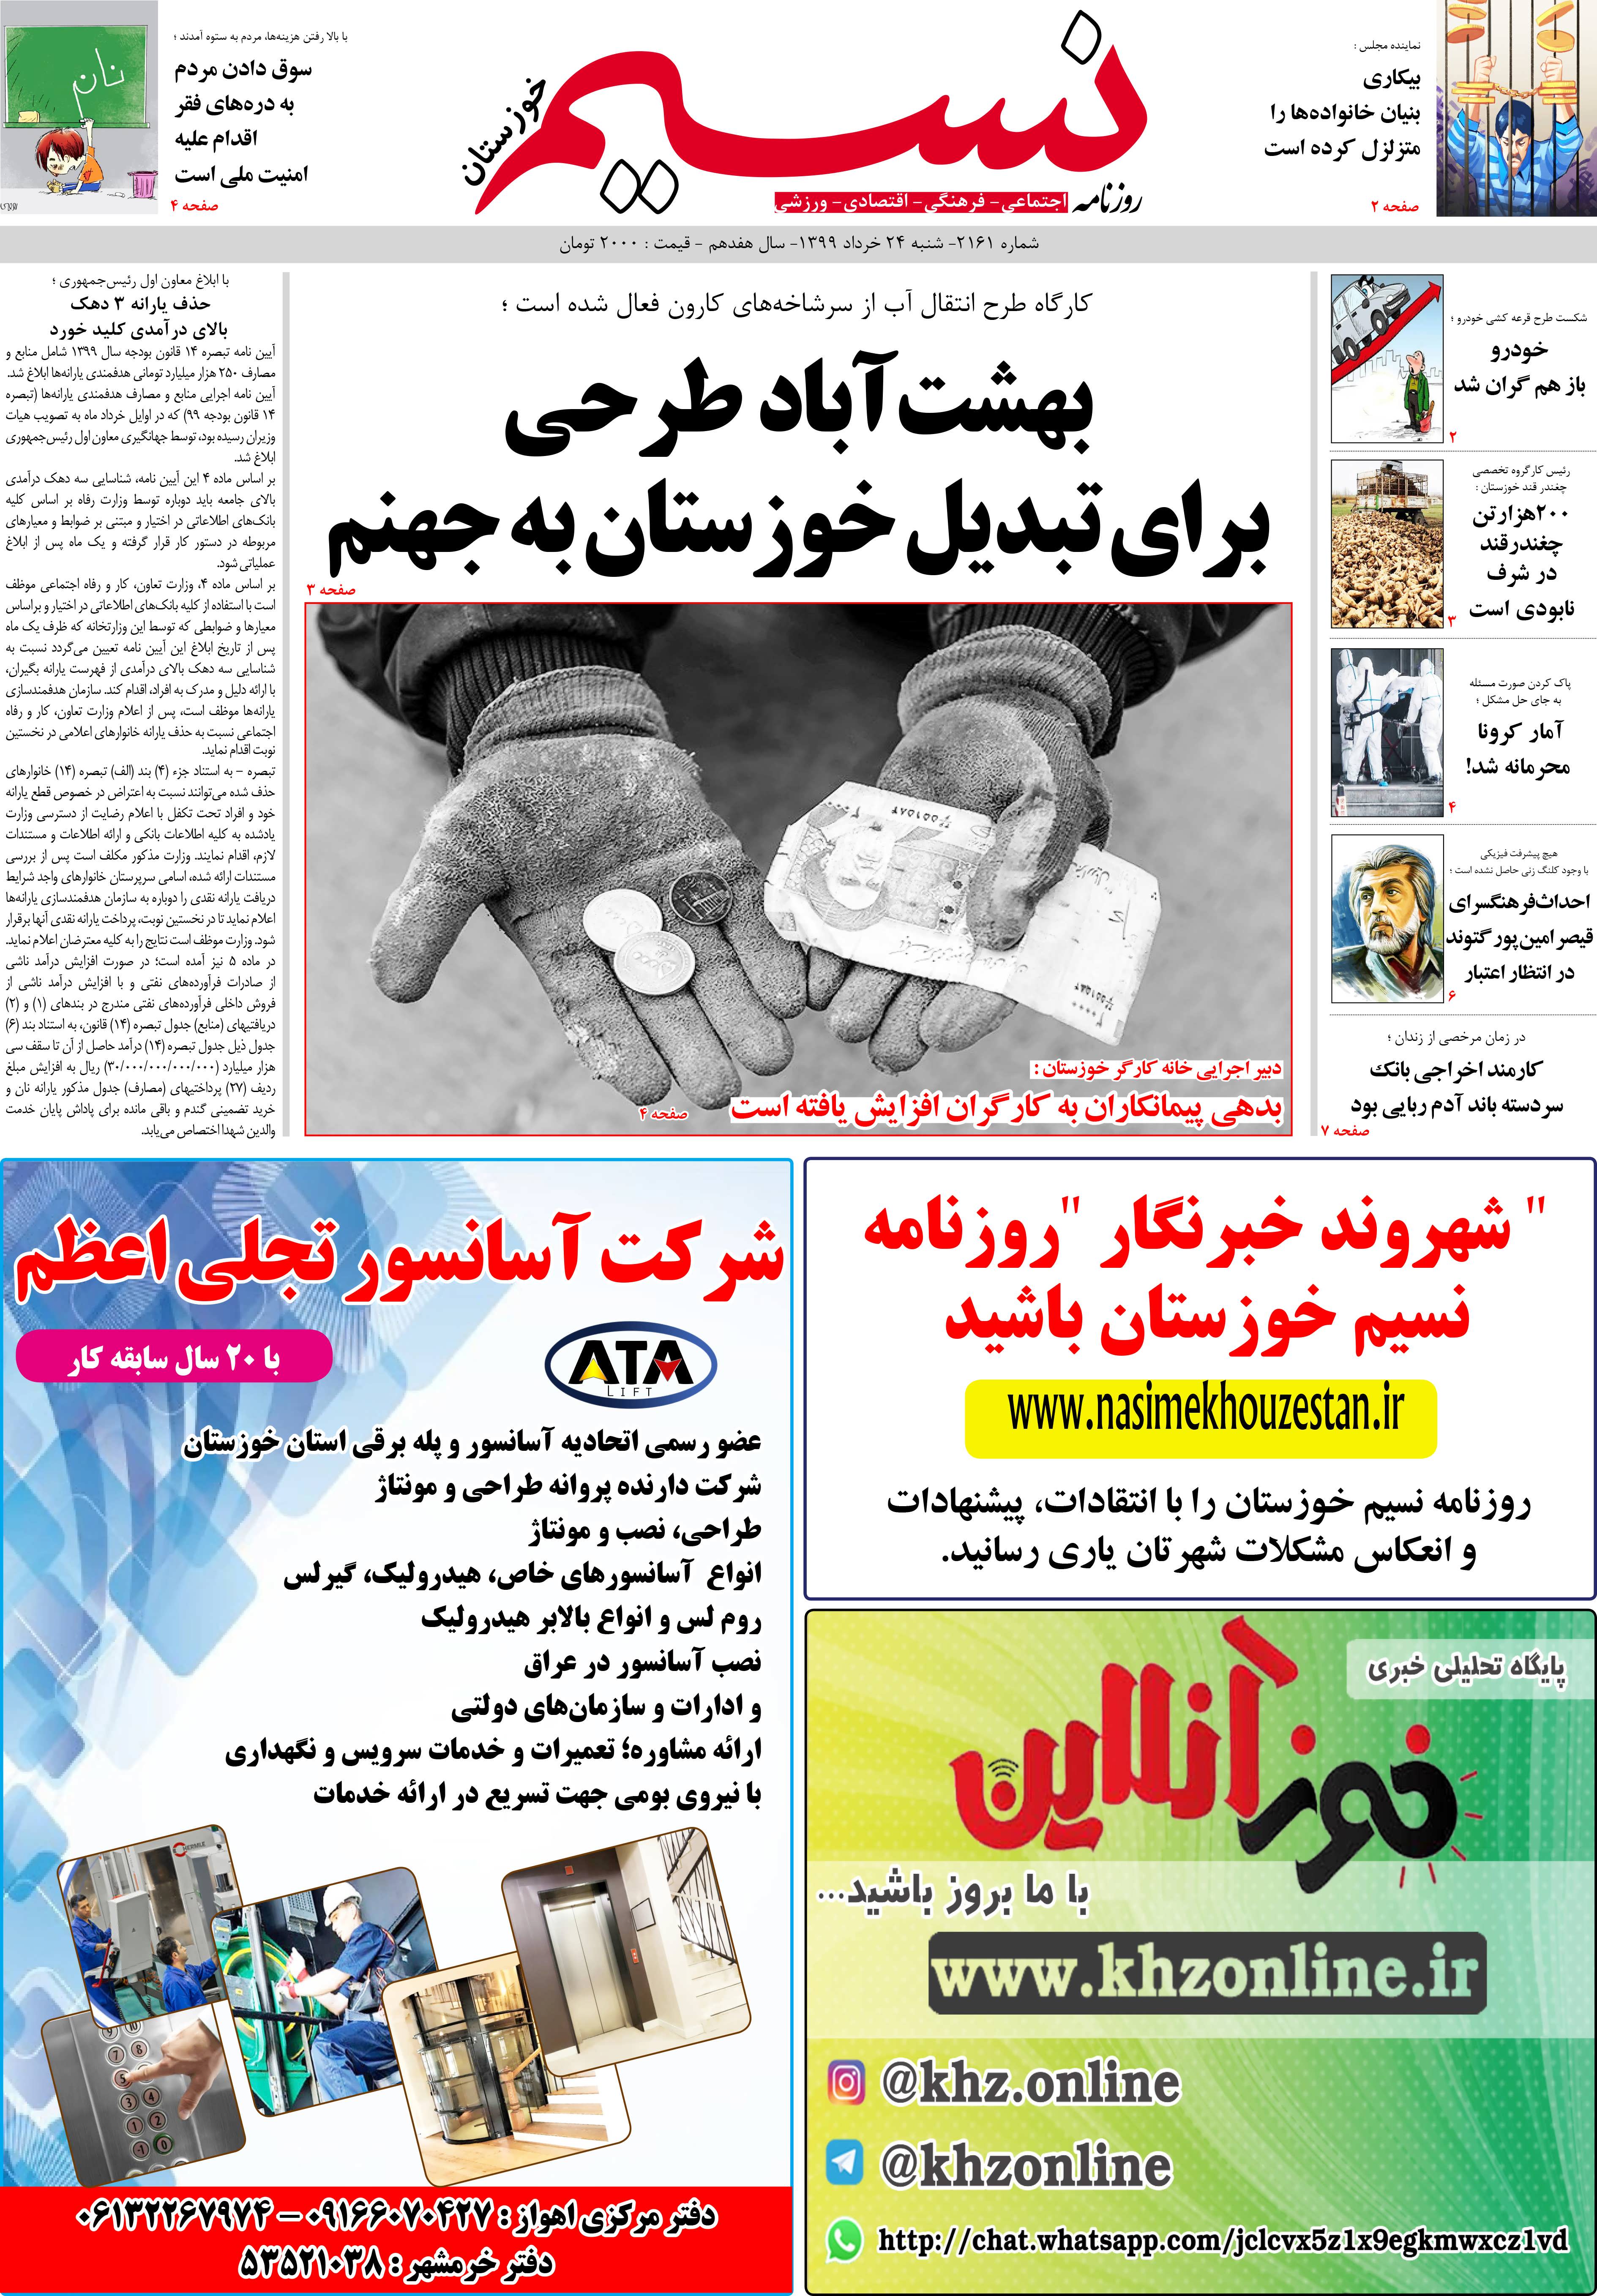 صفحه اصلی روزنامه نسیم شماره 2161 